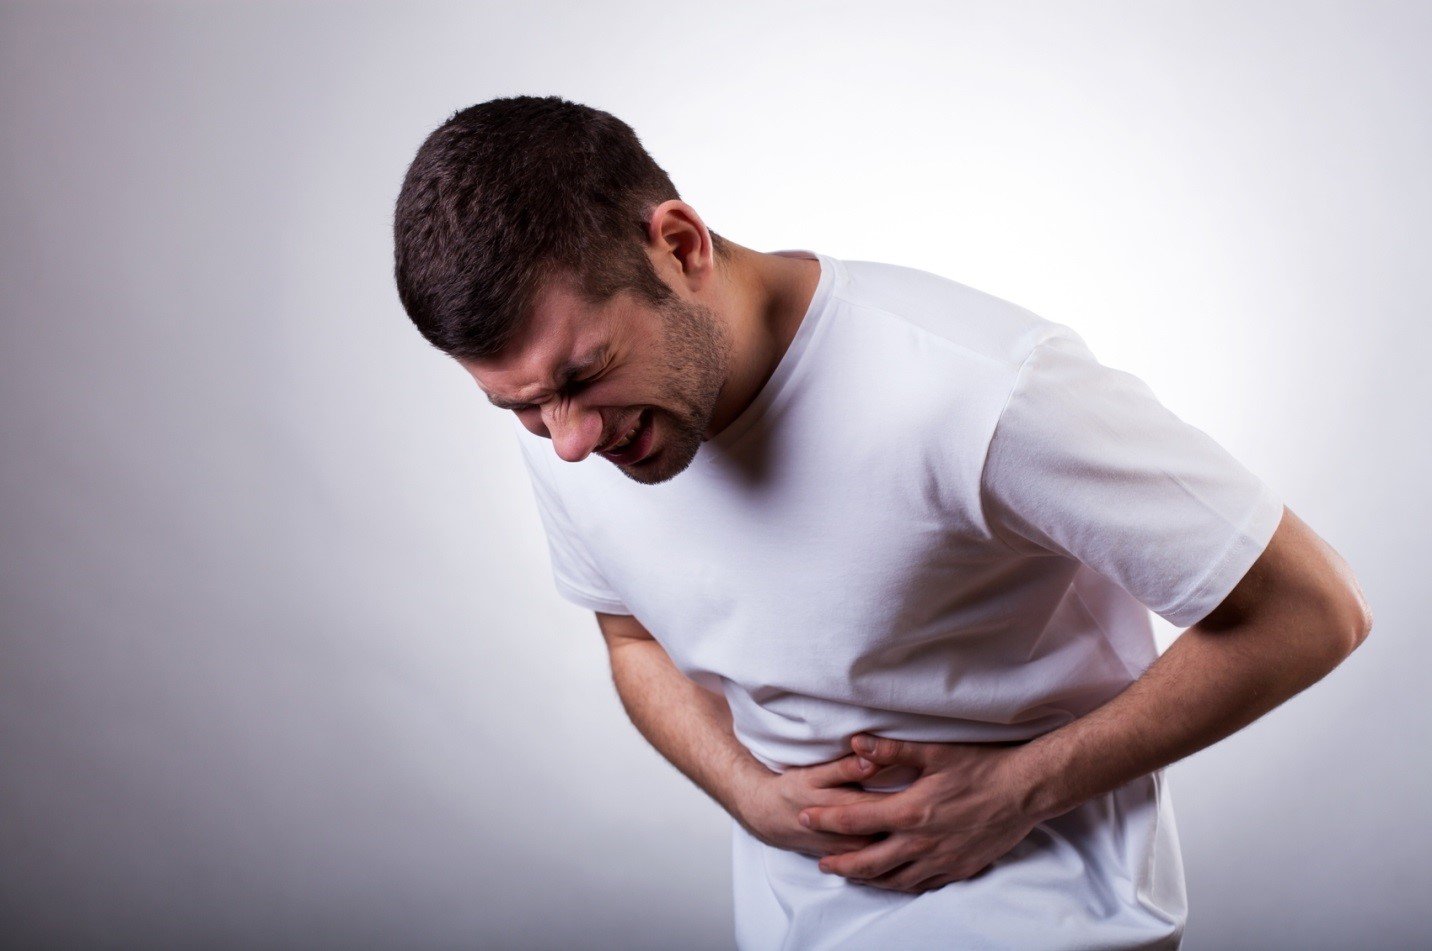 Nguyên nhân và cách giảm đau bụng đau bụng 2 bên ngang rốn bạn cần biết